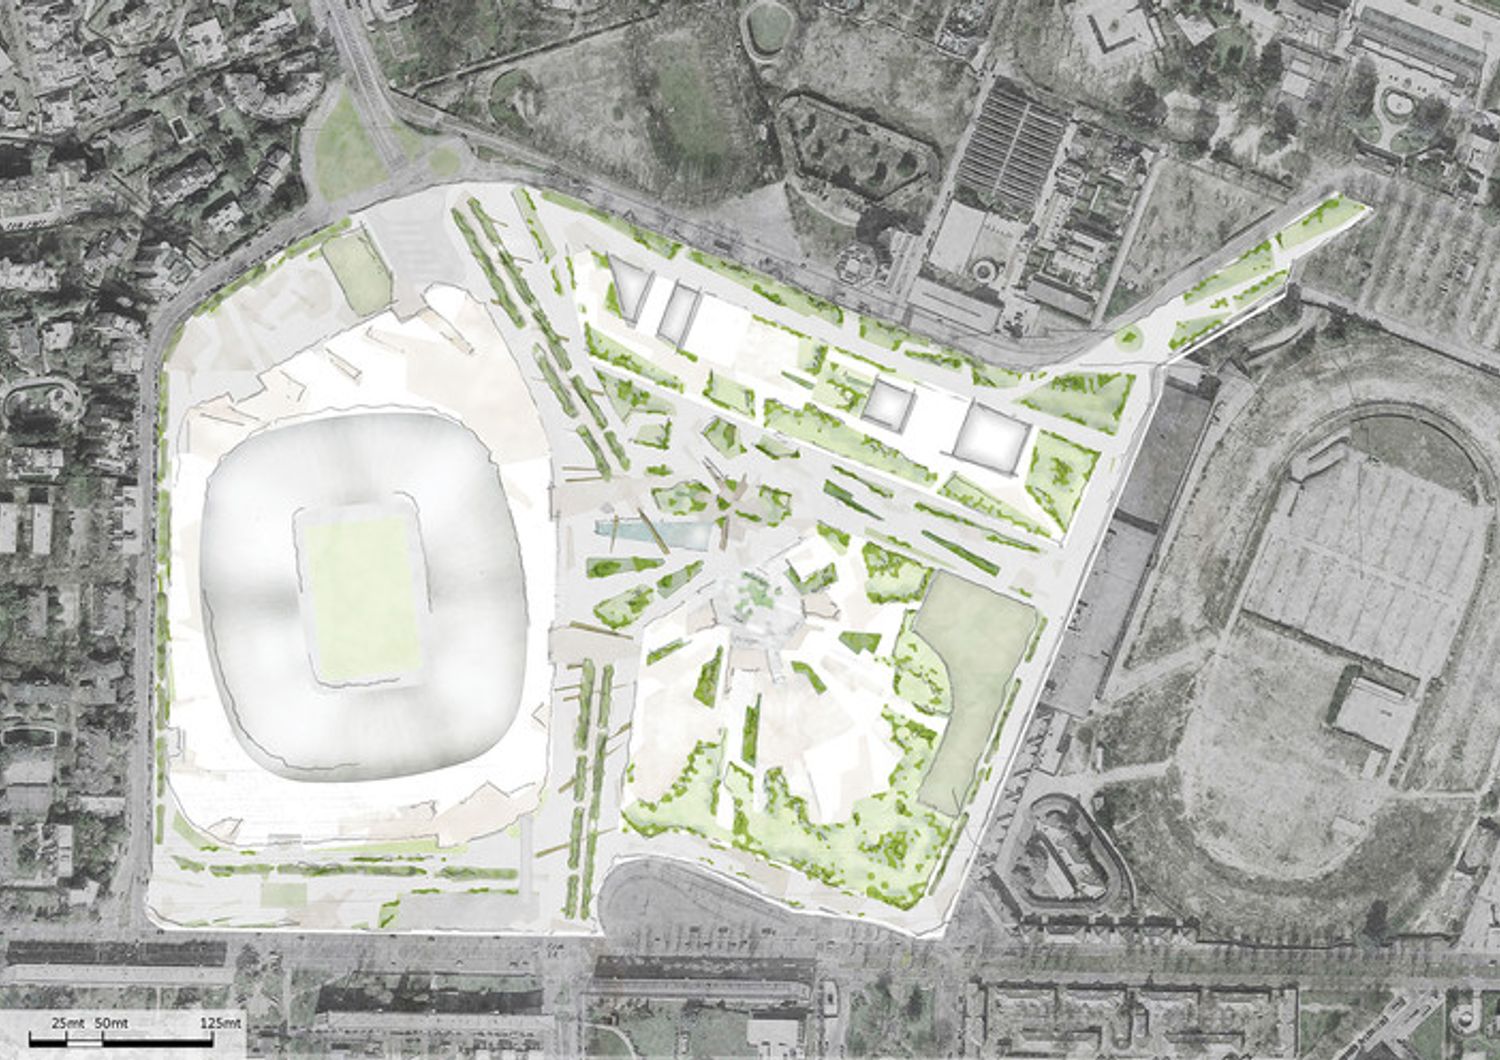 Planimetria del progetto per il nuovo stadio di San Siro